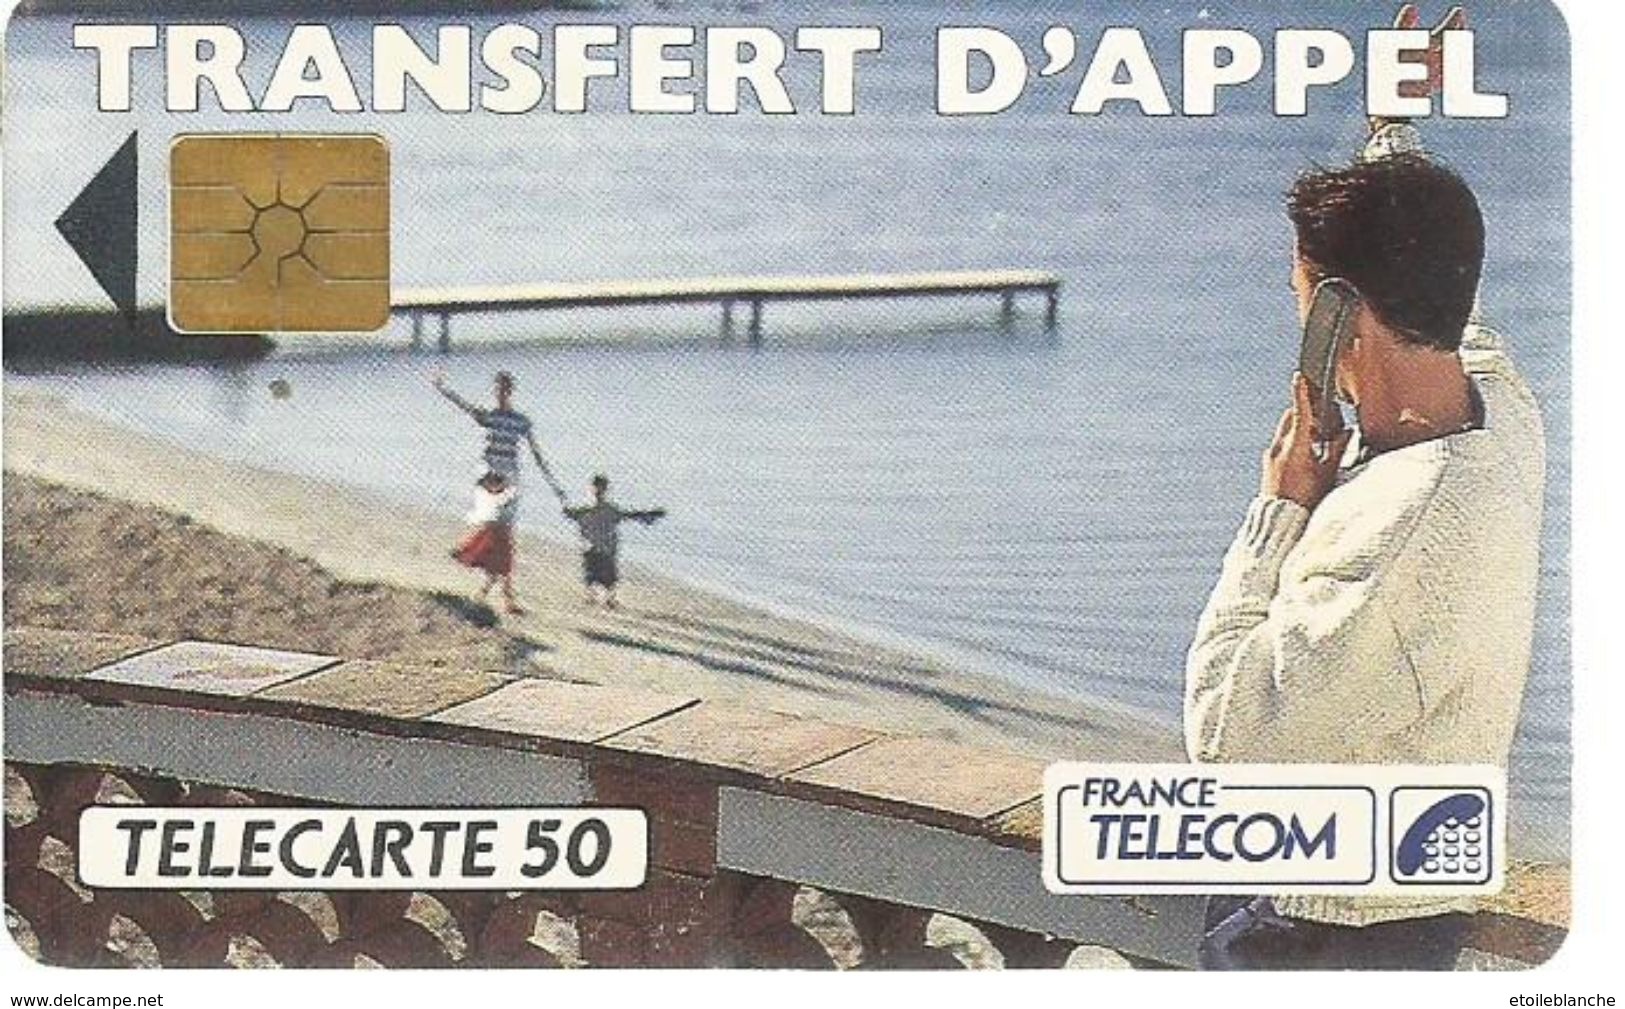 Telecarte France Telecom 1992 - Publicité, Transfert D'appel - Homme En Vacances, Plage, Famille - Telecom Operators